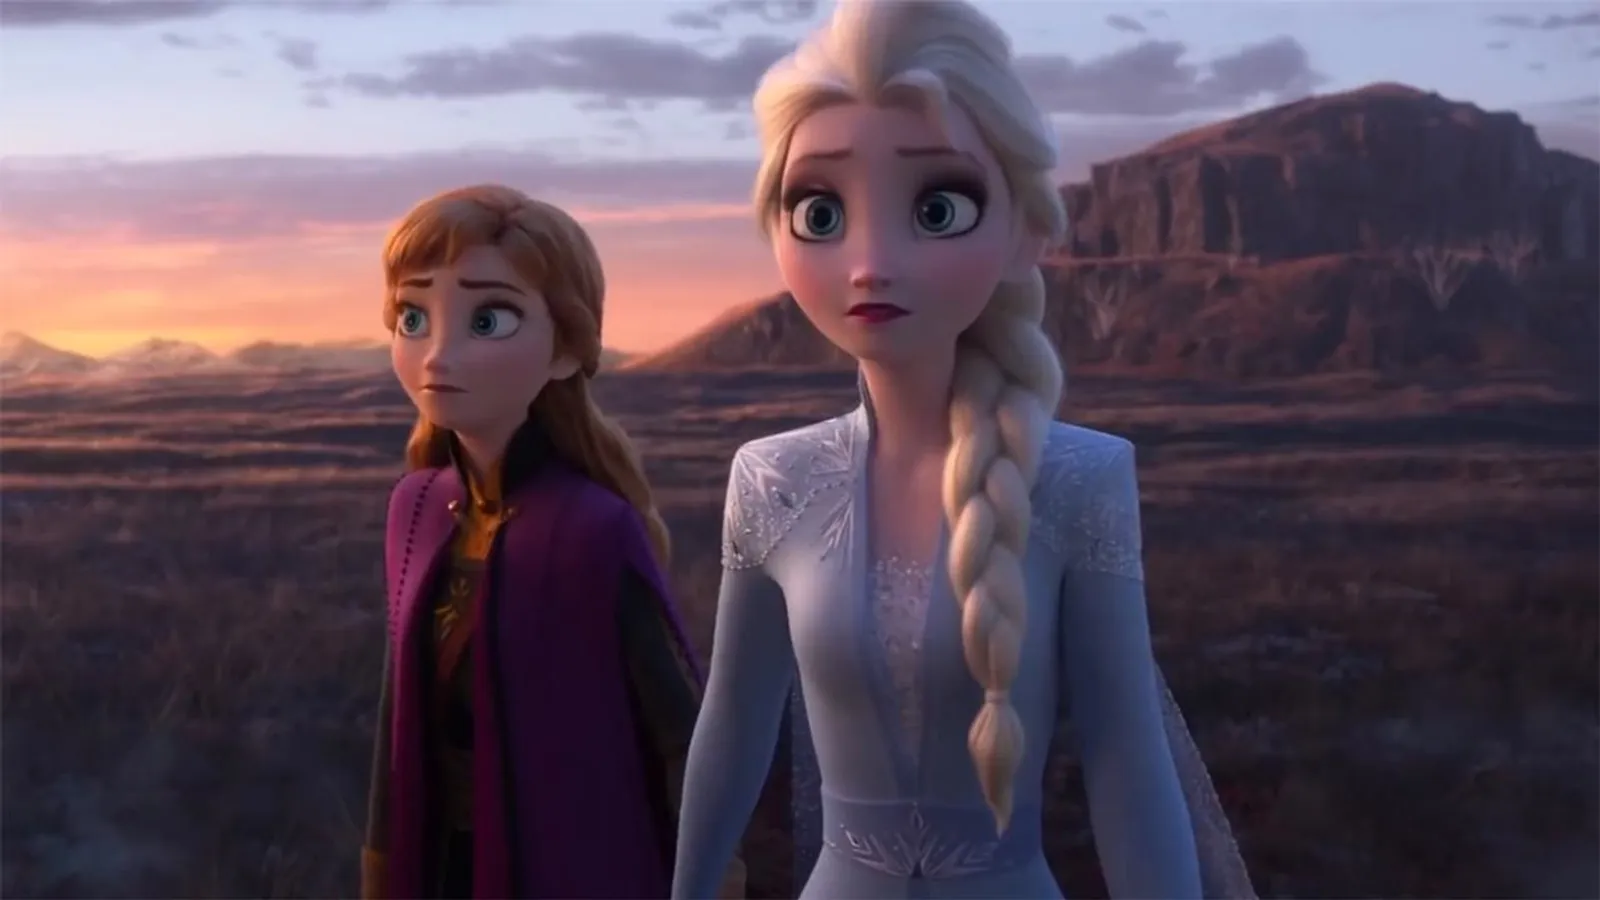 Masih Seru untuk Dibahas, Ini Fakta Menarik di Balik Film Frozen 2